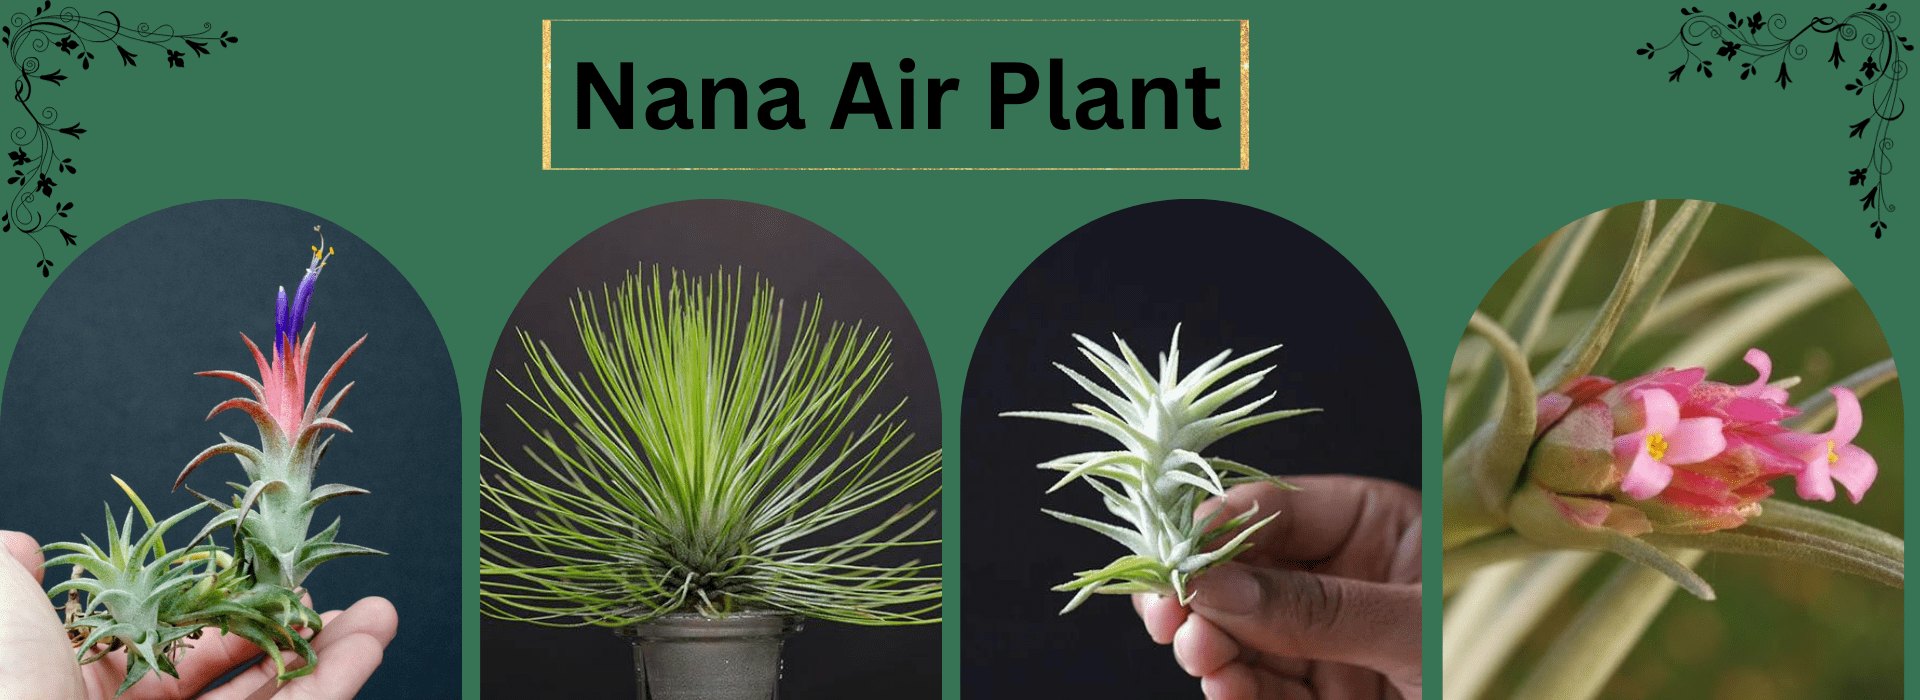 Nana Air Plant